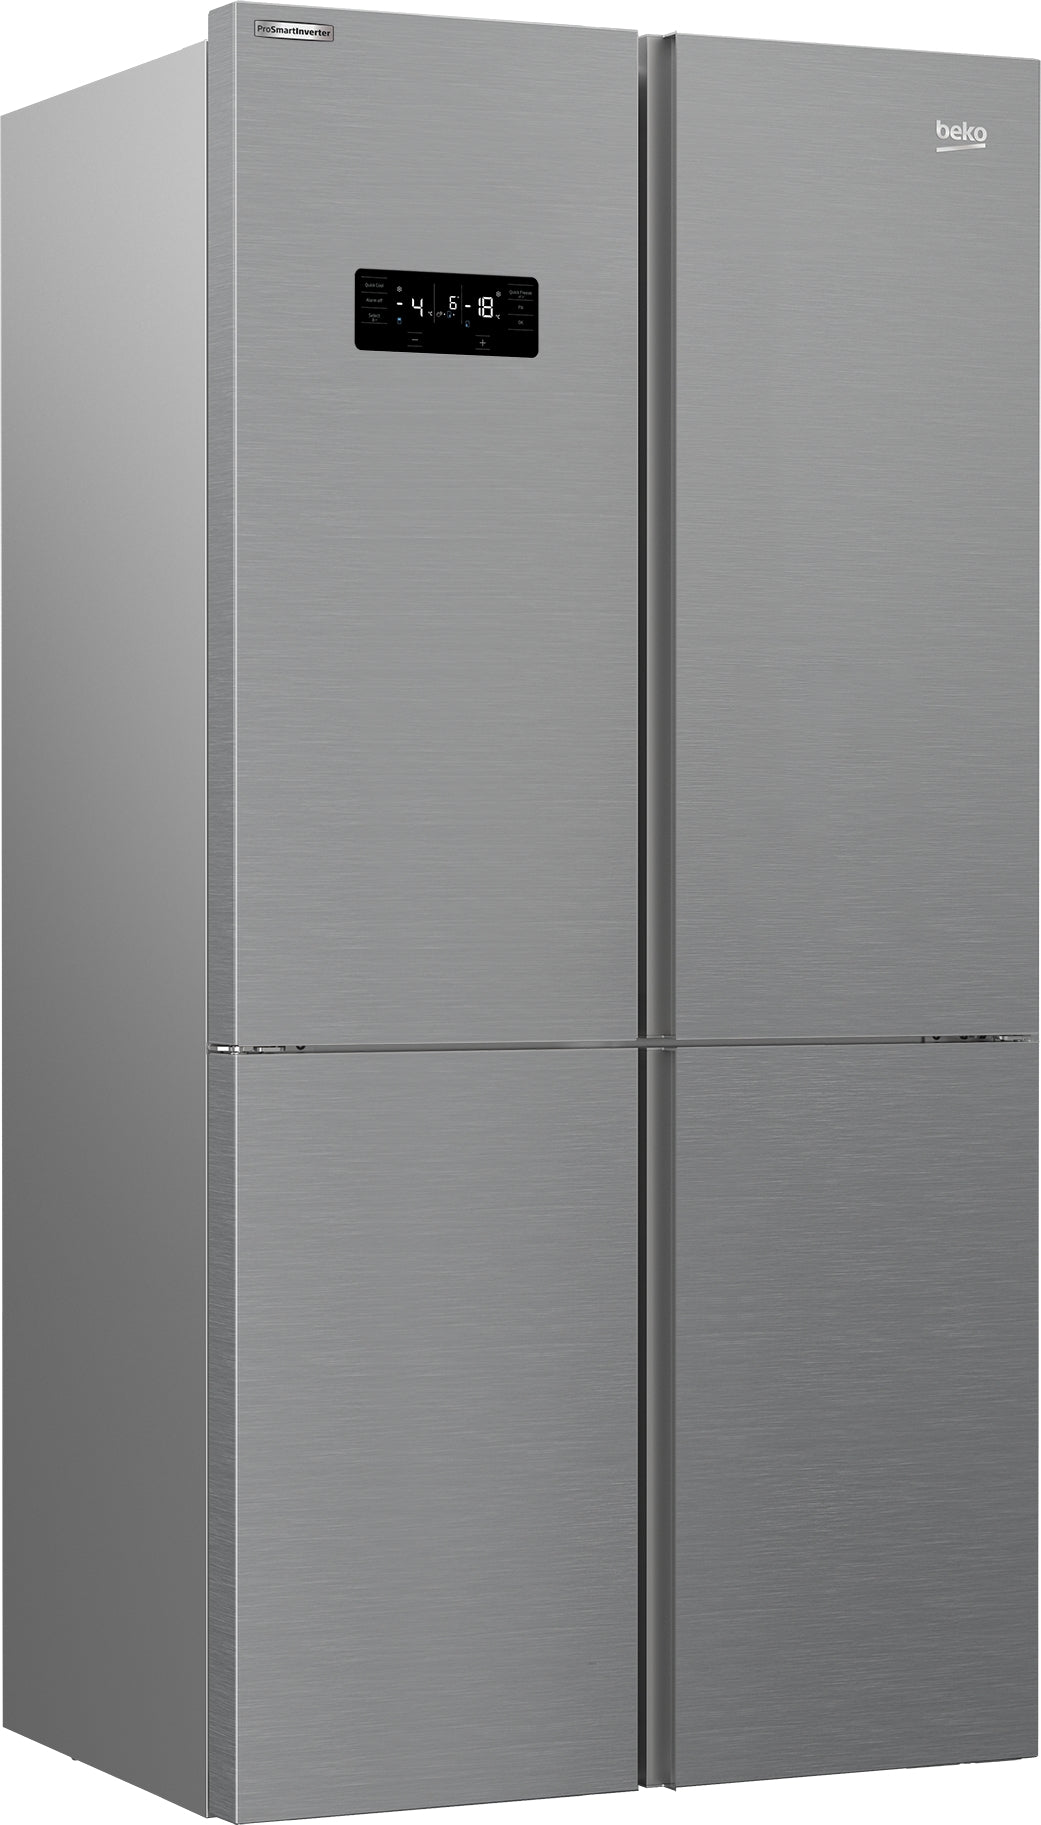 BEKO American Fridge Freezer 4 Door SS A+ | MN1436224PS